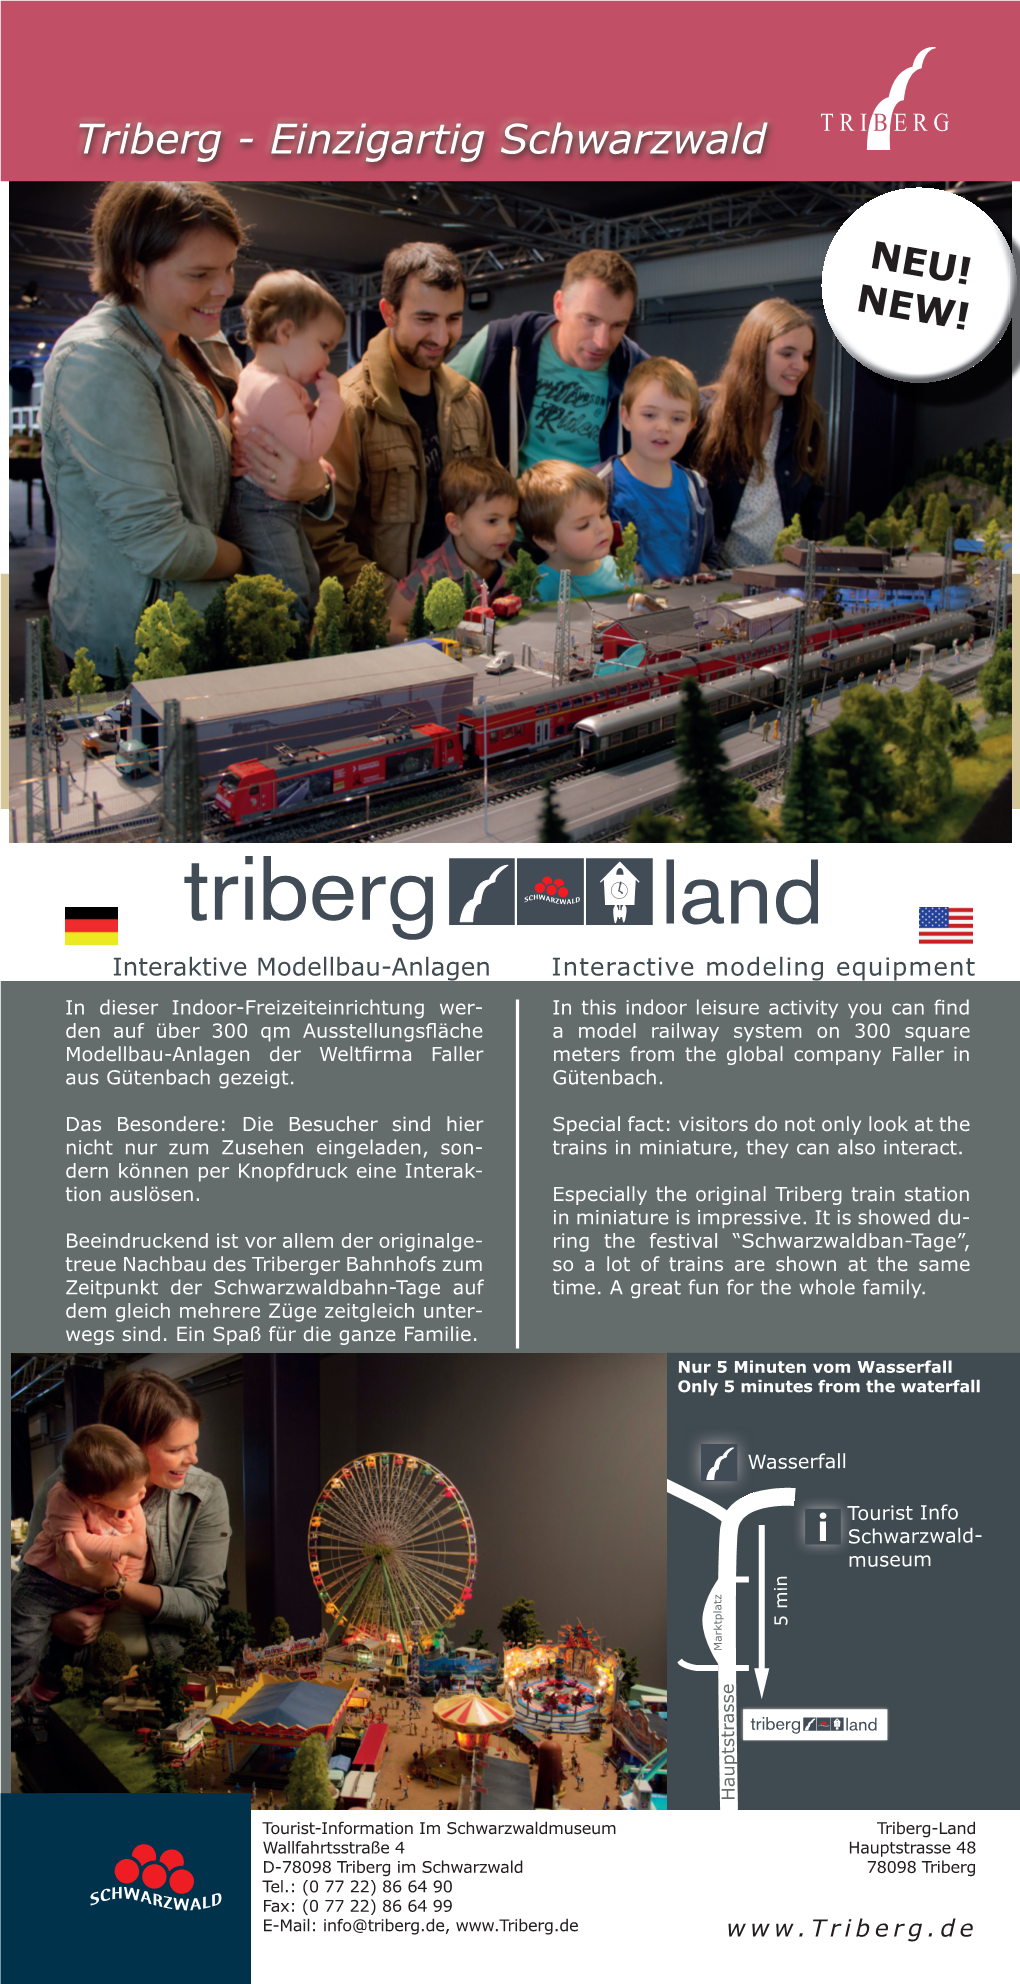 Triberg - Einzigartig Schwarzwald